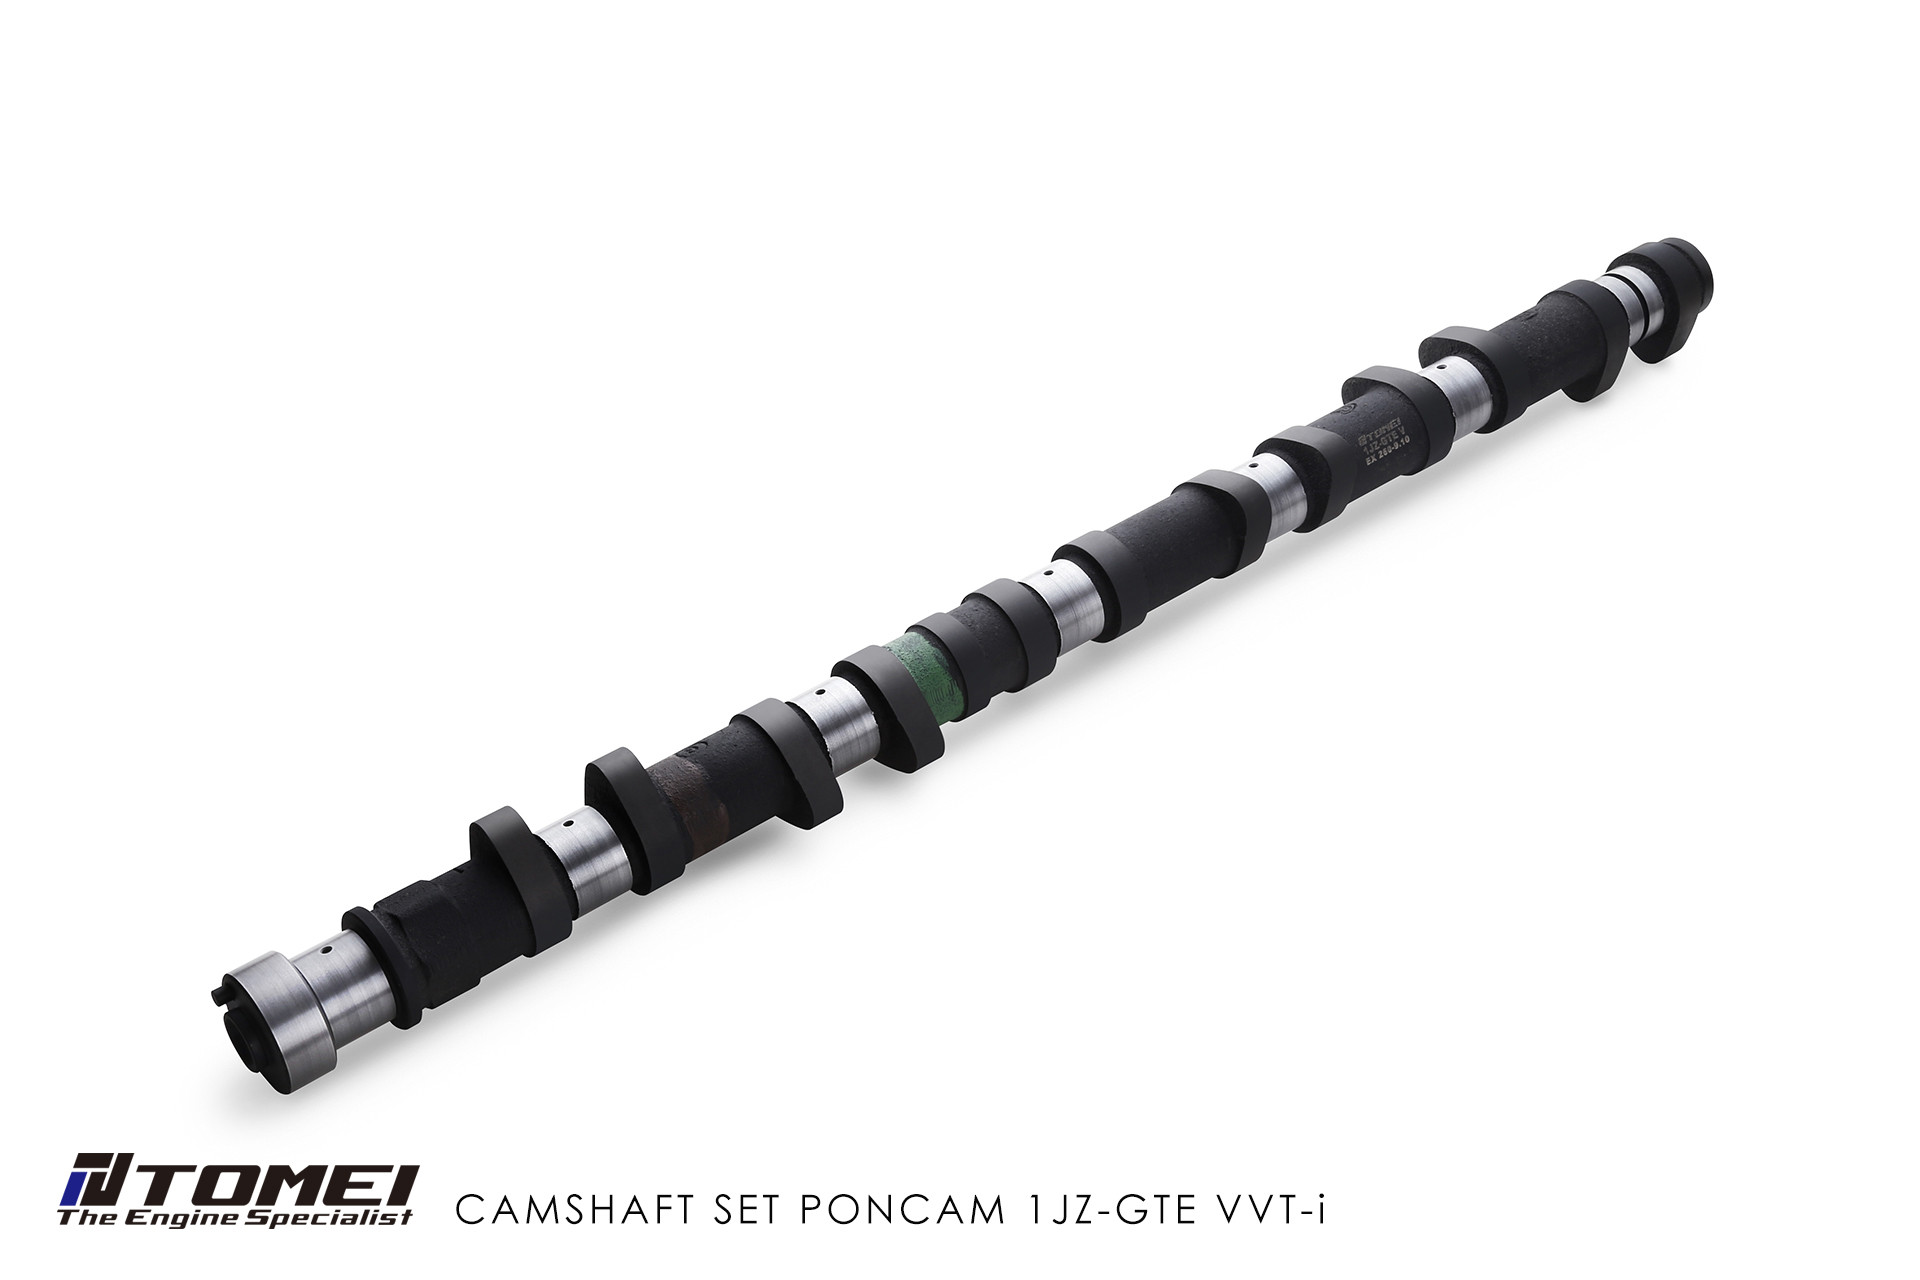 CAMSHAFT PONCAM 1JZ-GTE VVT-i EX 260-9.10